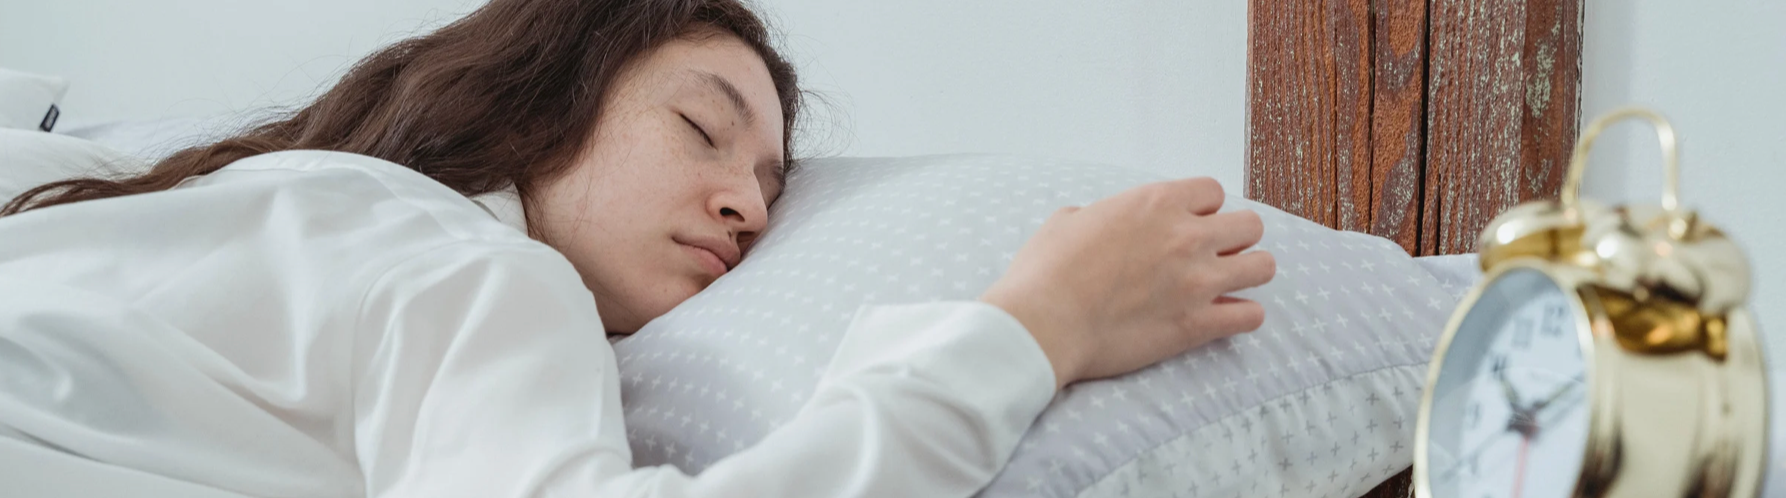 Gastblog von The Sleep Council: Wie man einschläft ... und einschläft!